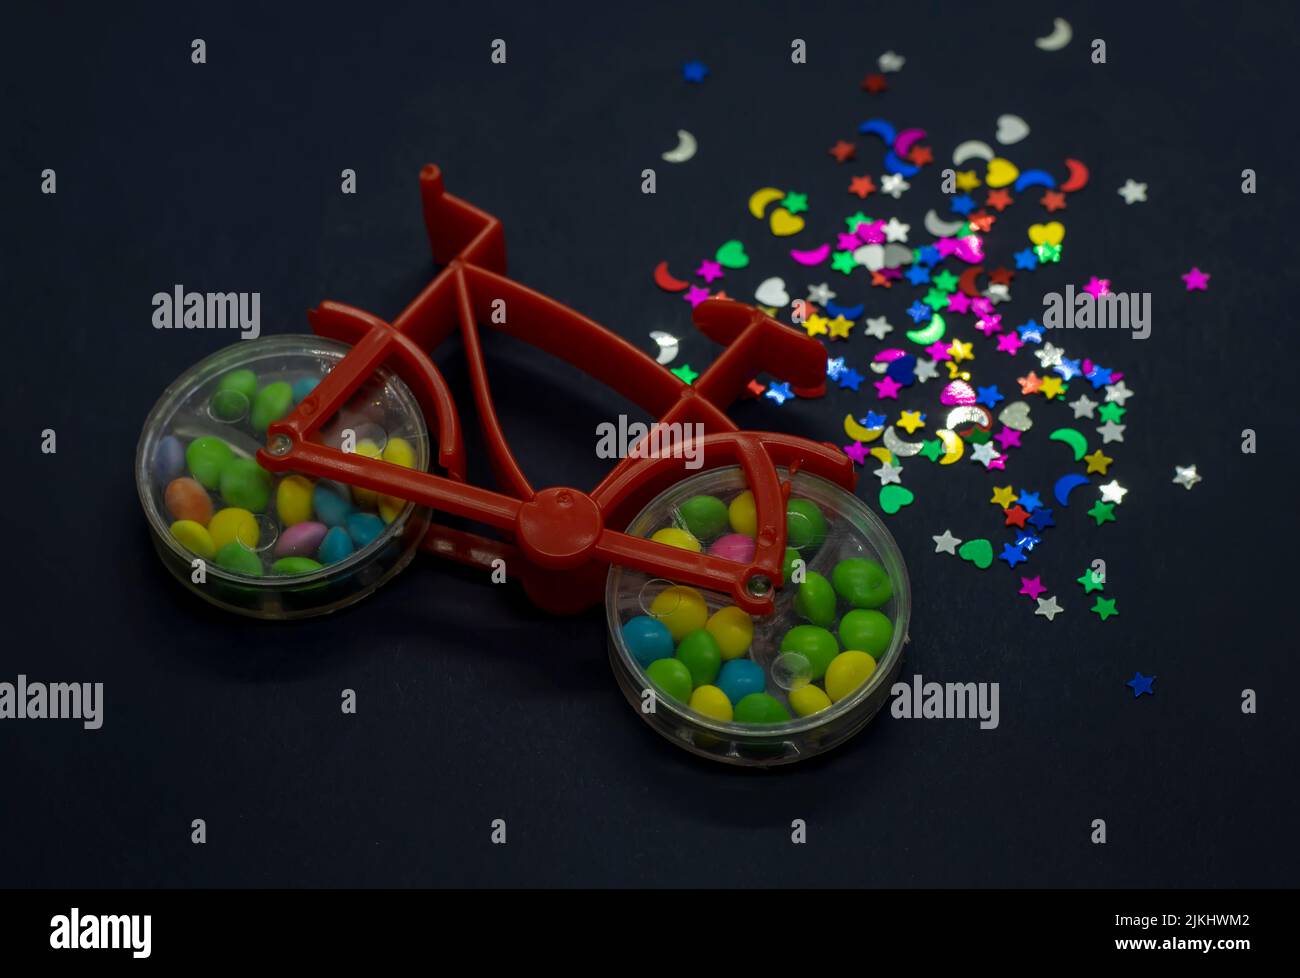 Un primo piano di una bicicletta giocattolo con caramella noce colorata all'interno delle ruote e forme glitterate accanto ad essa Foto Stock